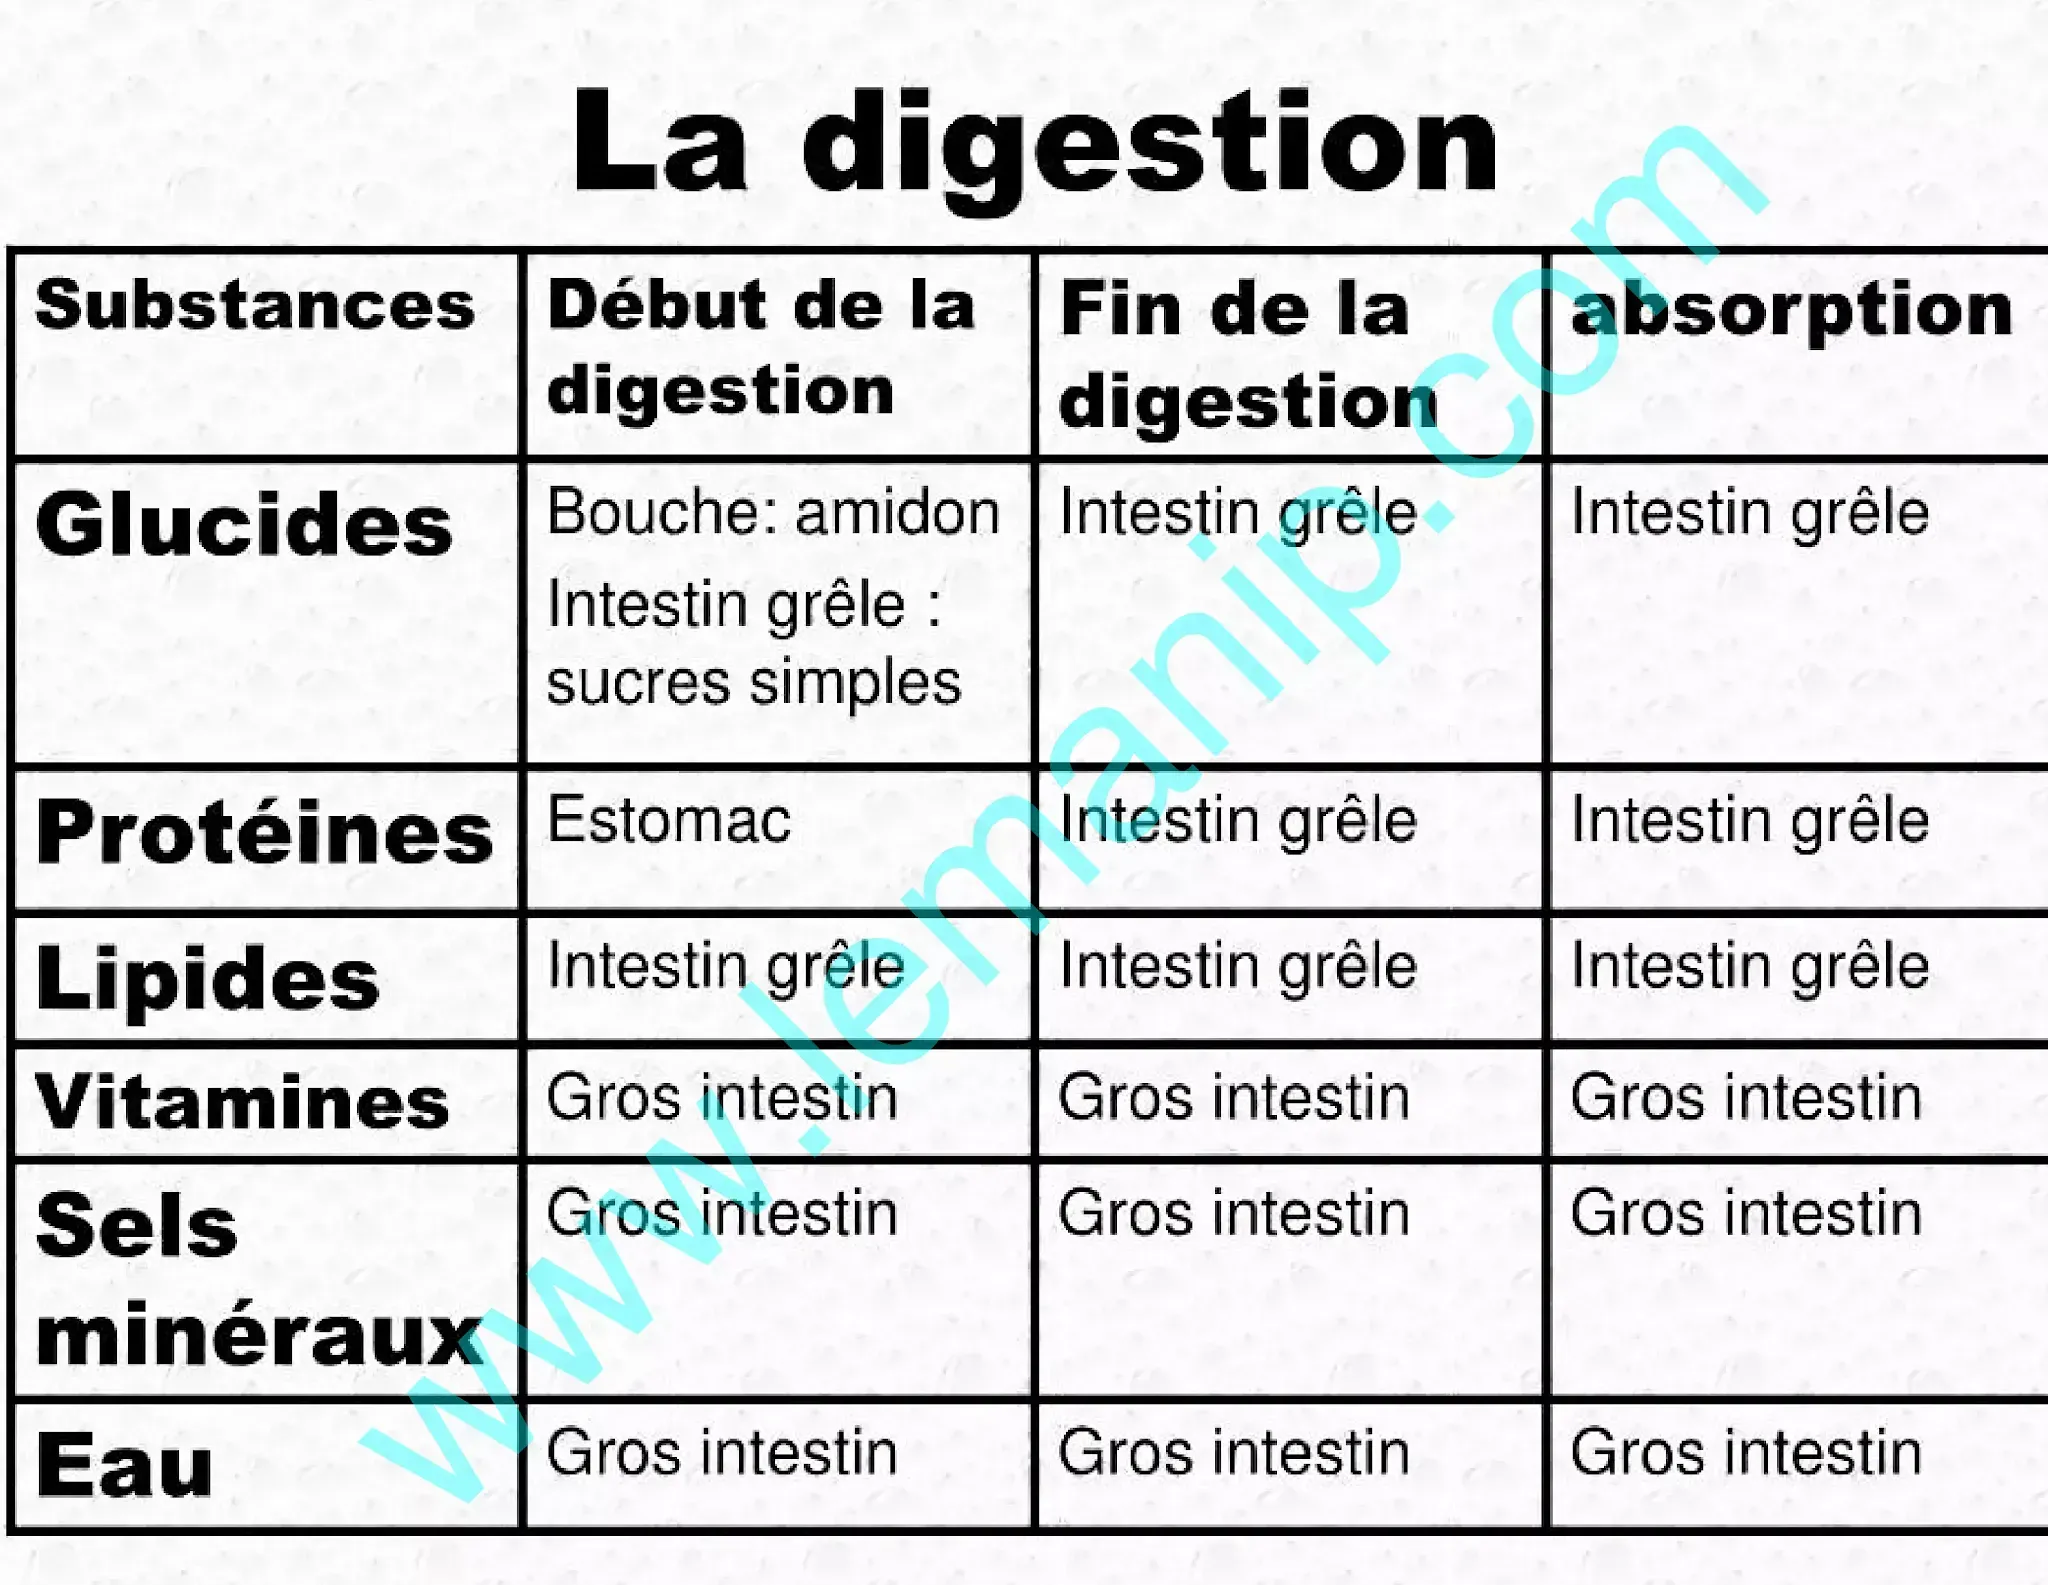 La digestion: Définition et etapes